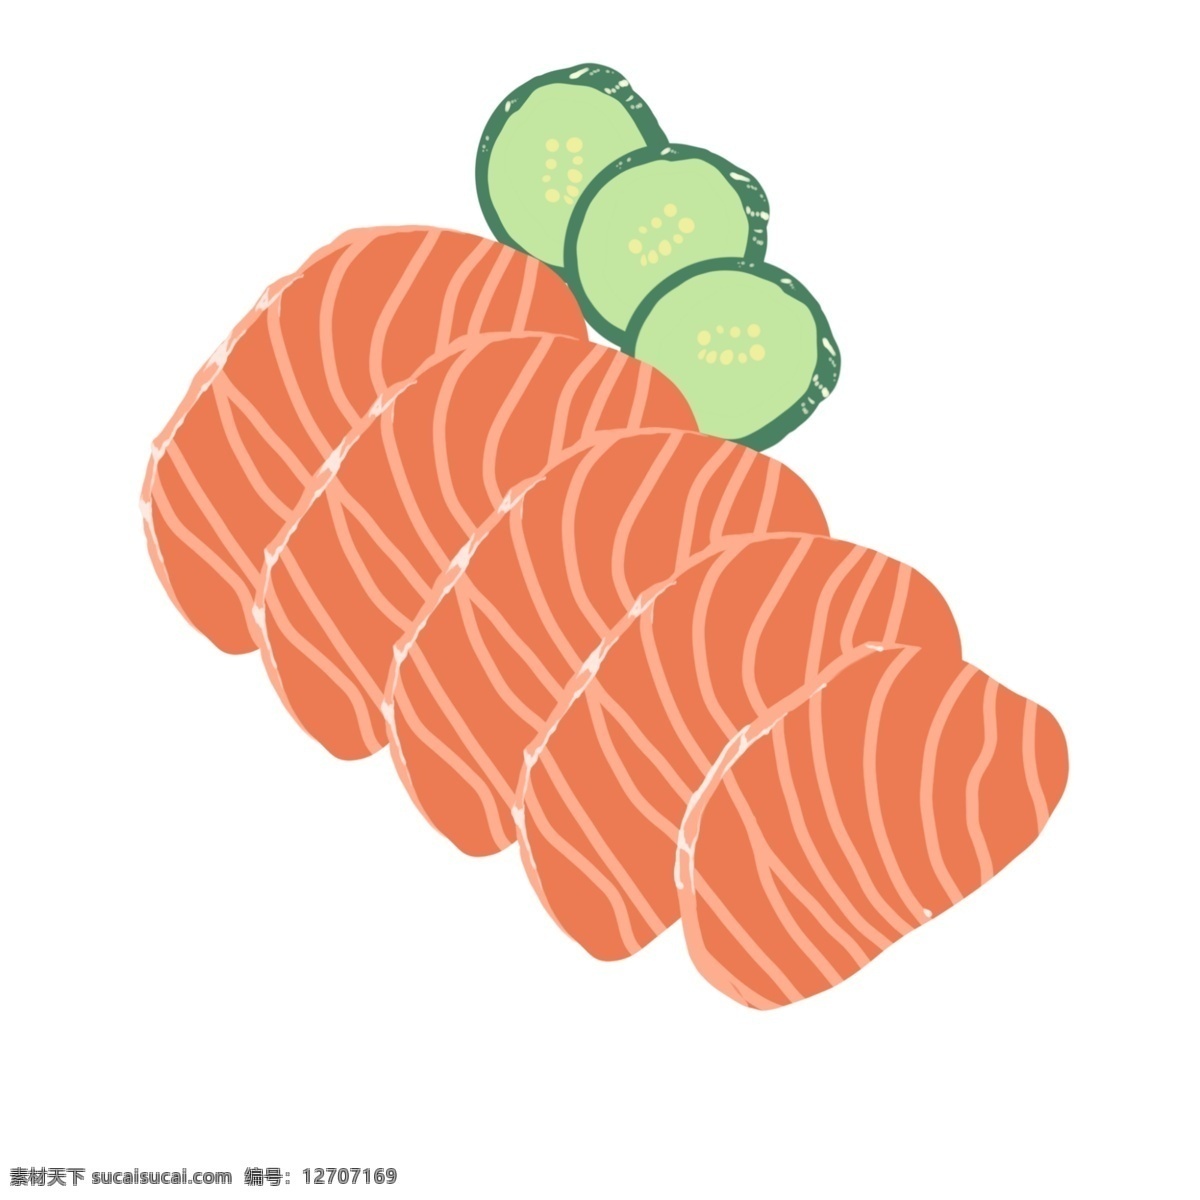 精美 的卡 通 三文 鱼片 精致的三文鱼 三文鱼片 食物 日式食物 卡通食物插画 切片黄瓜 切片 三文鱼 插画